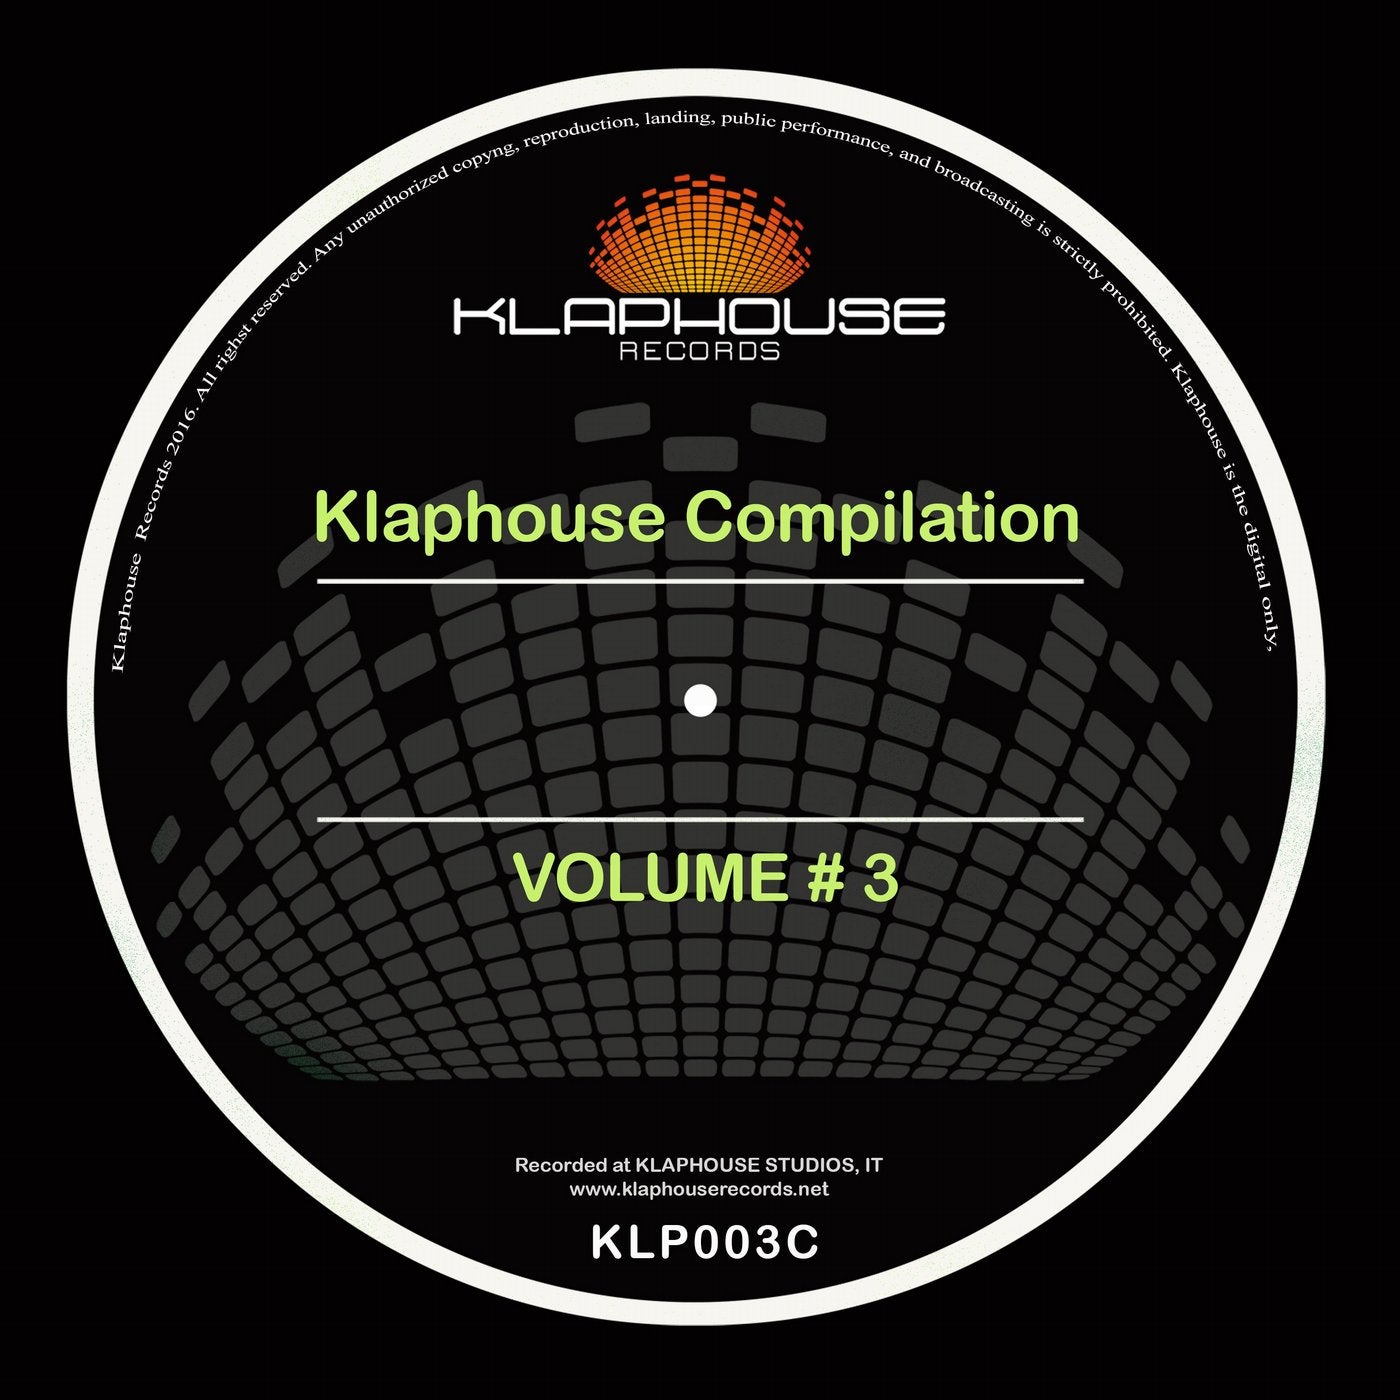 Klaphouse Compilation Volume # 3